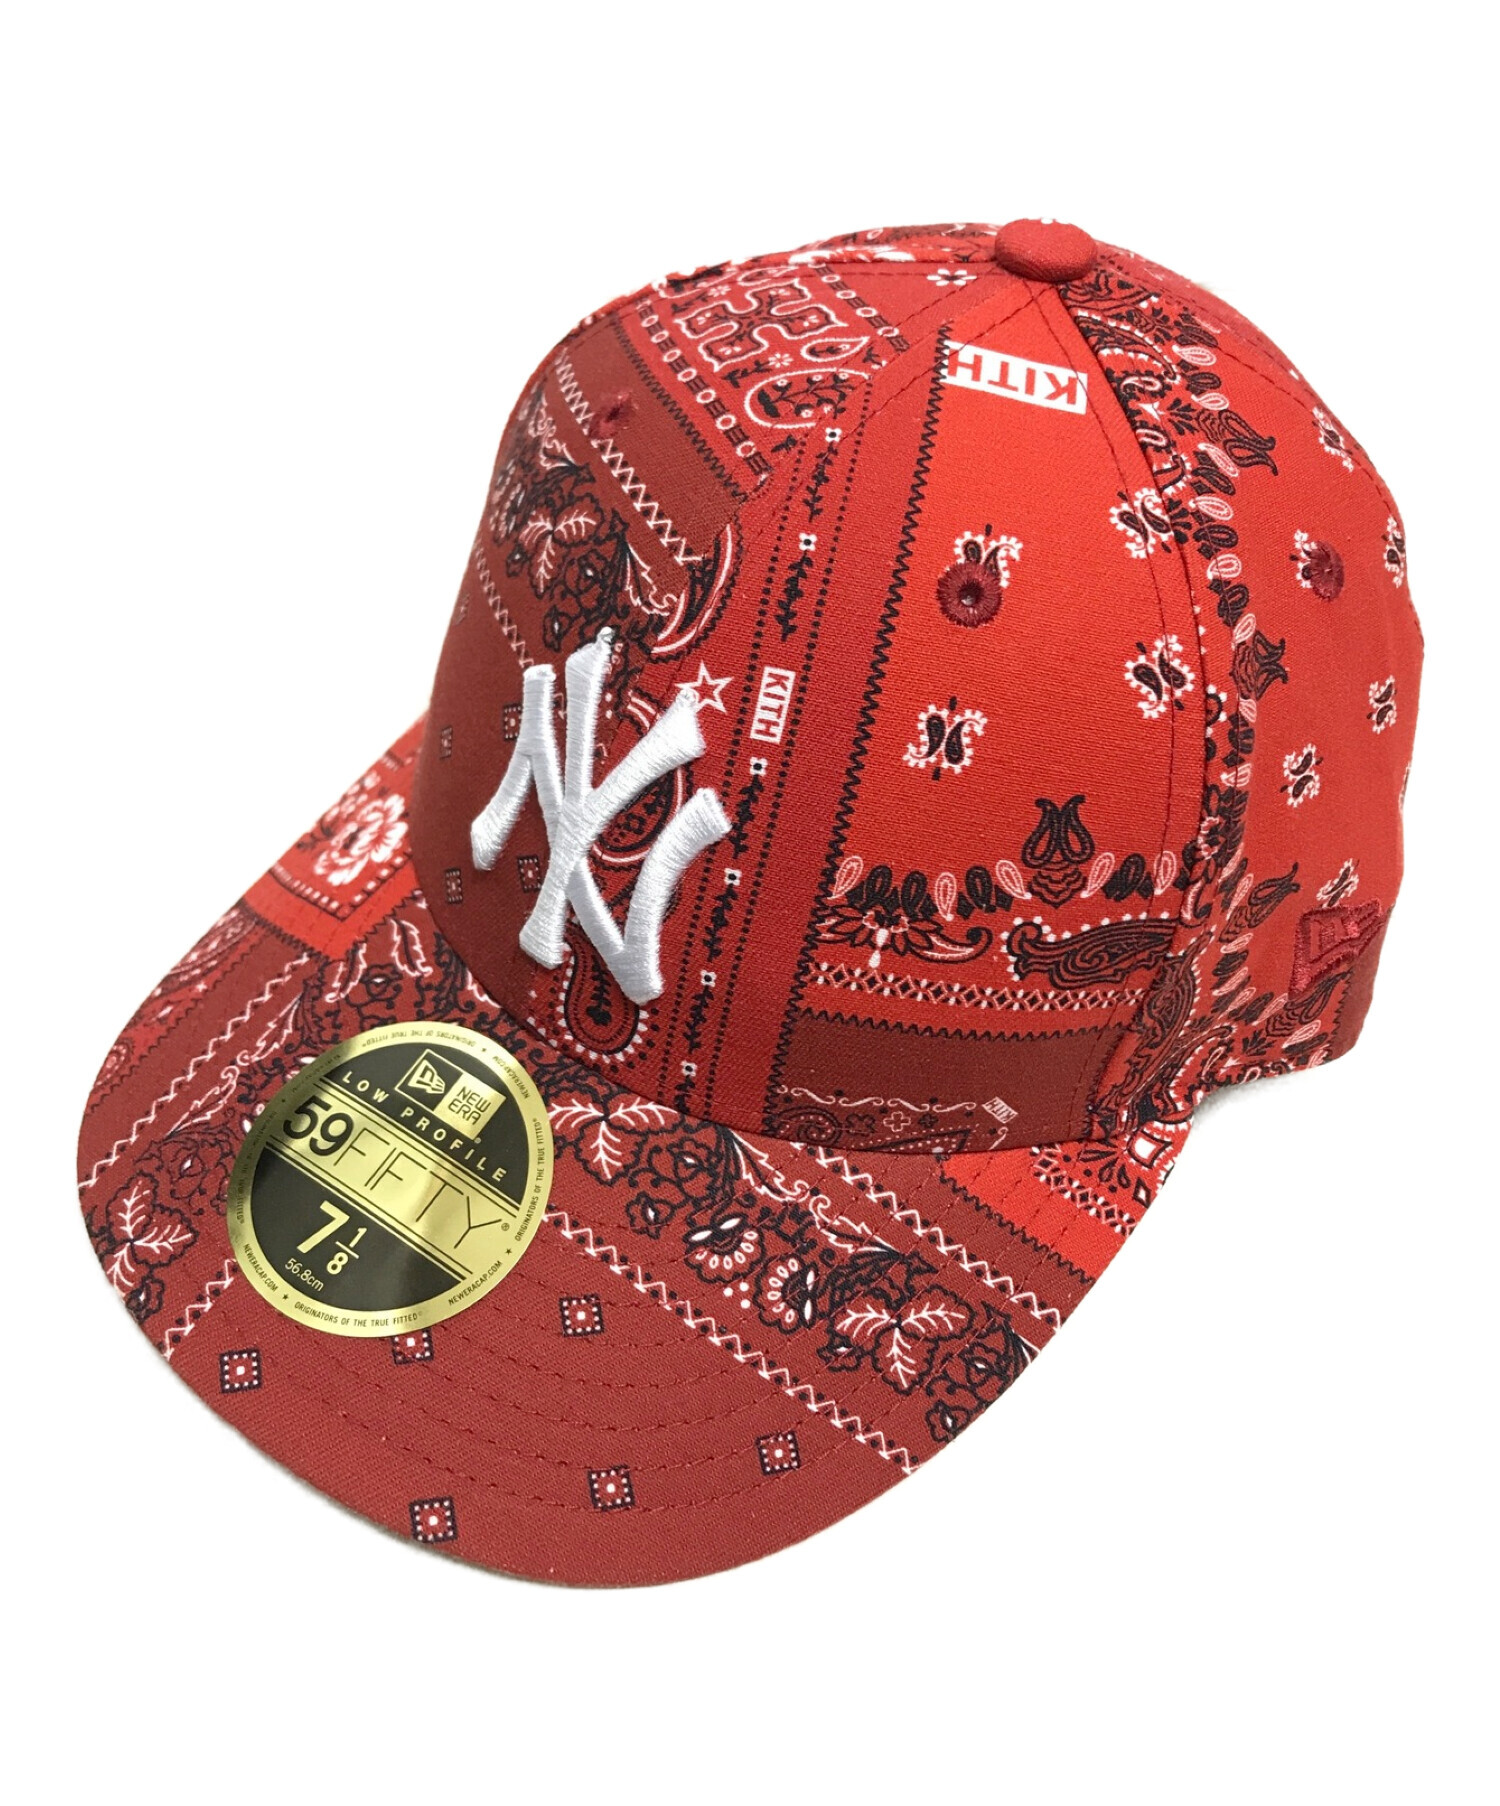 kith限定販売 new era MLB ヤンキース キャップ cap 赤